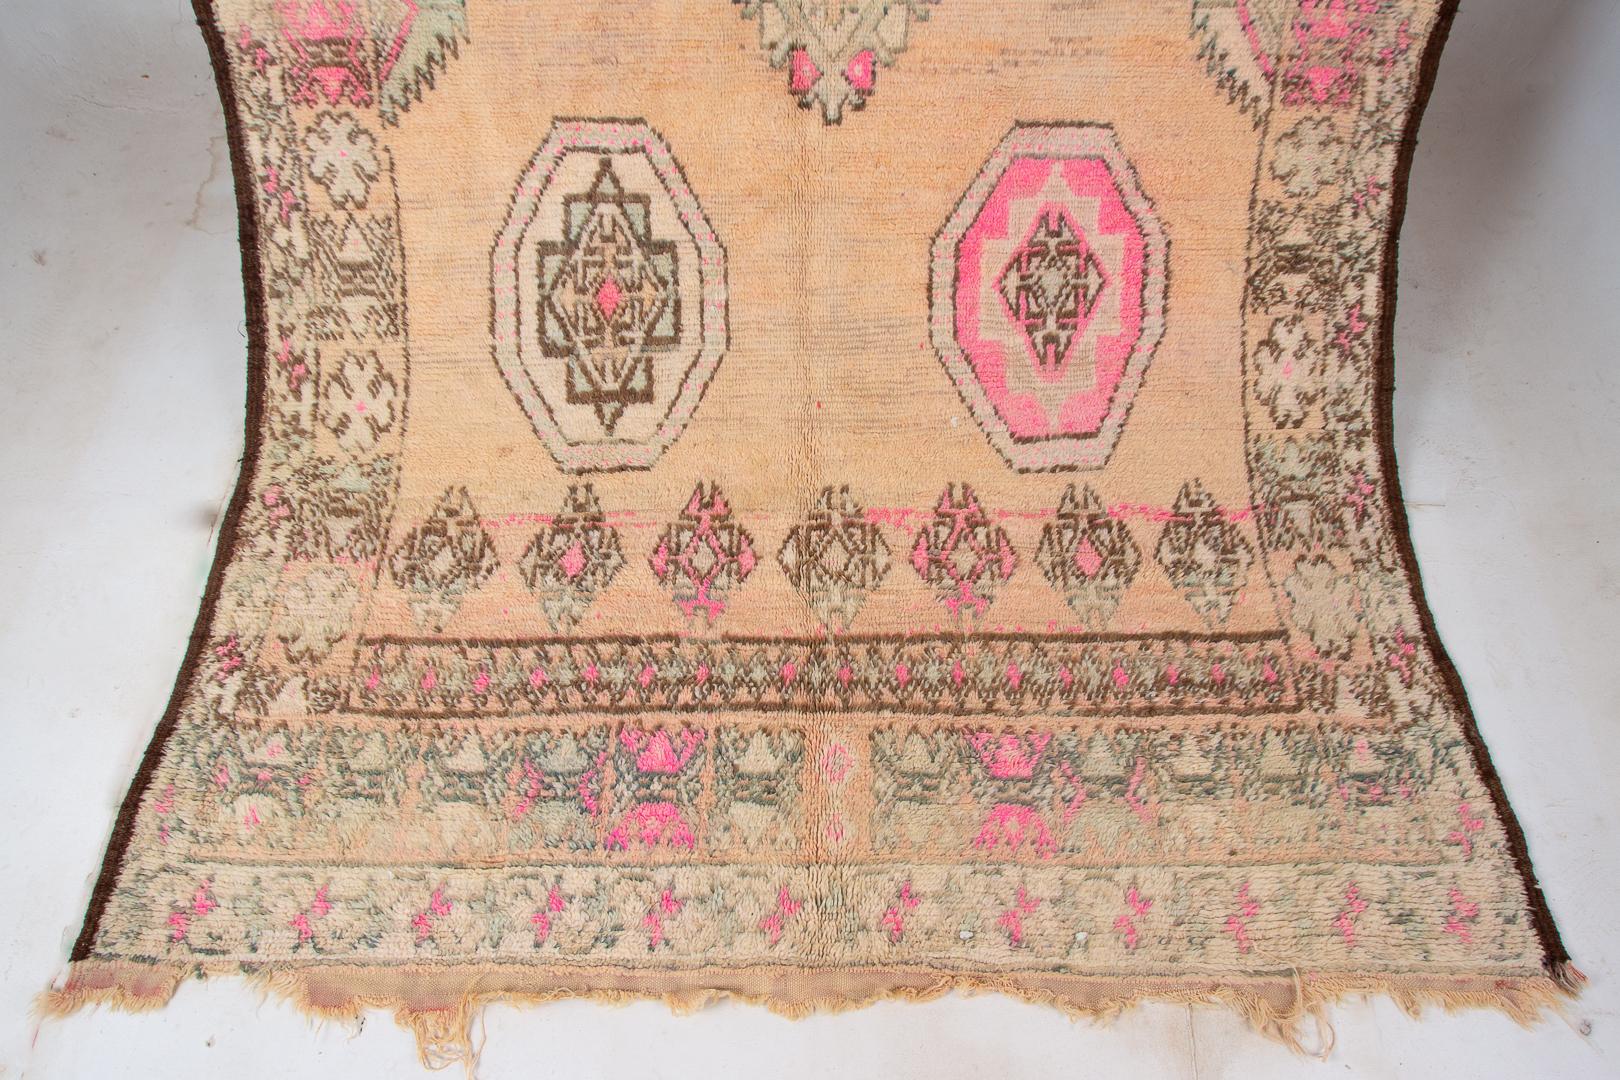 Versetzen Sie sich in eine andere Zeit mit diesem flachen marokkanischen Berberteppich Boujad aus den 1950er Jahren. Sein Stammesdesign öffnet ein Fenster in die Vergangenheit und fängt die Essenz von Tradition und Kultur ein. Die verblassten rosa